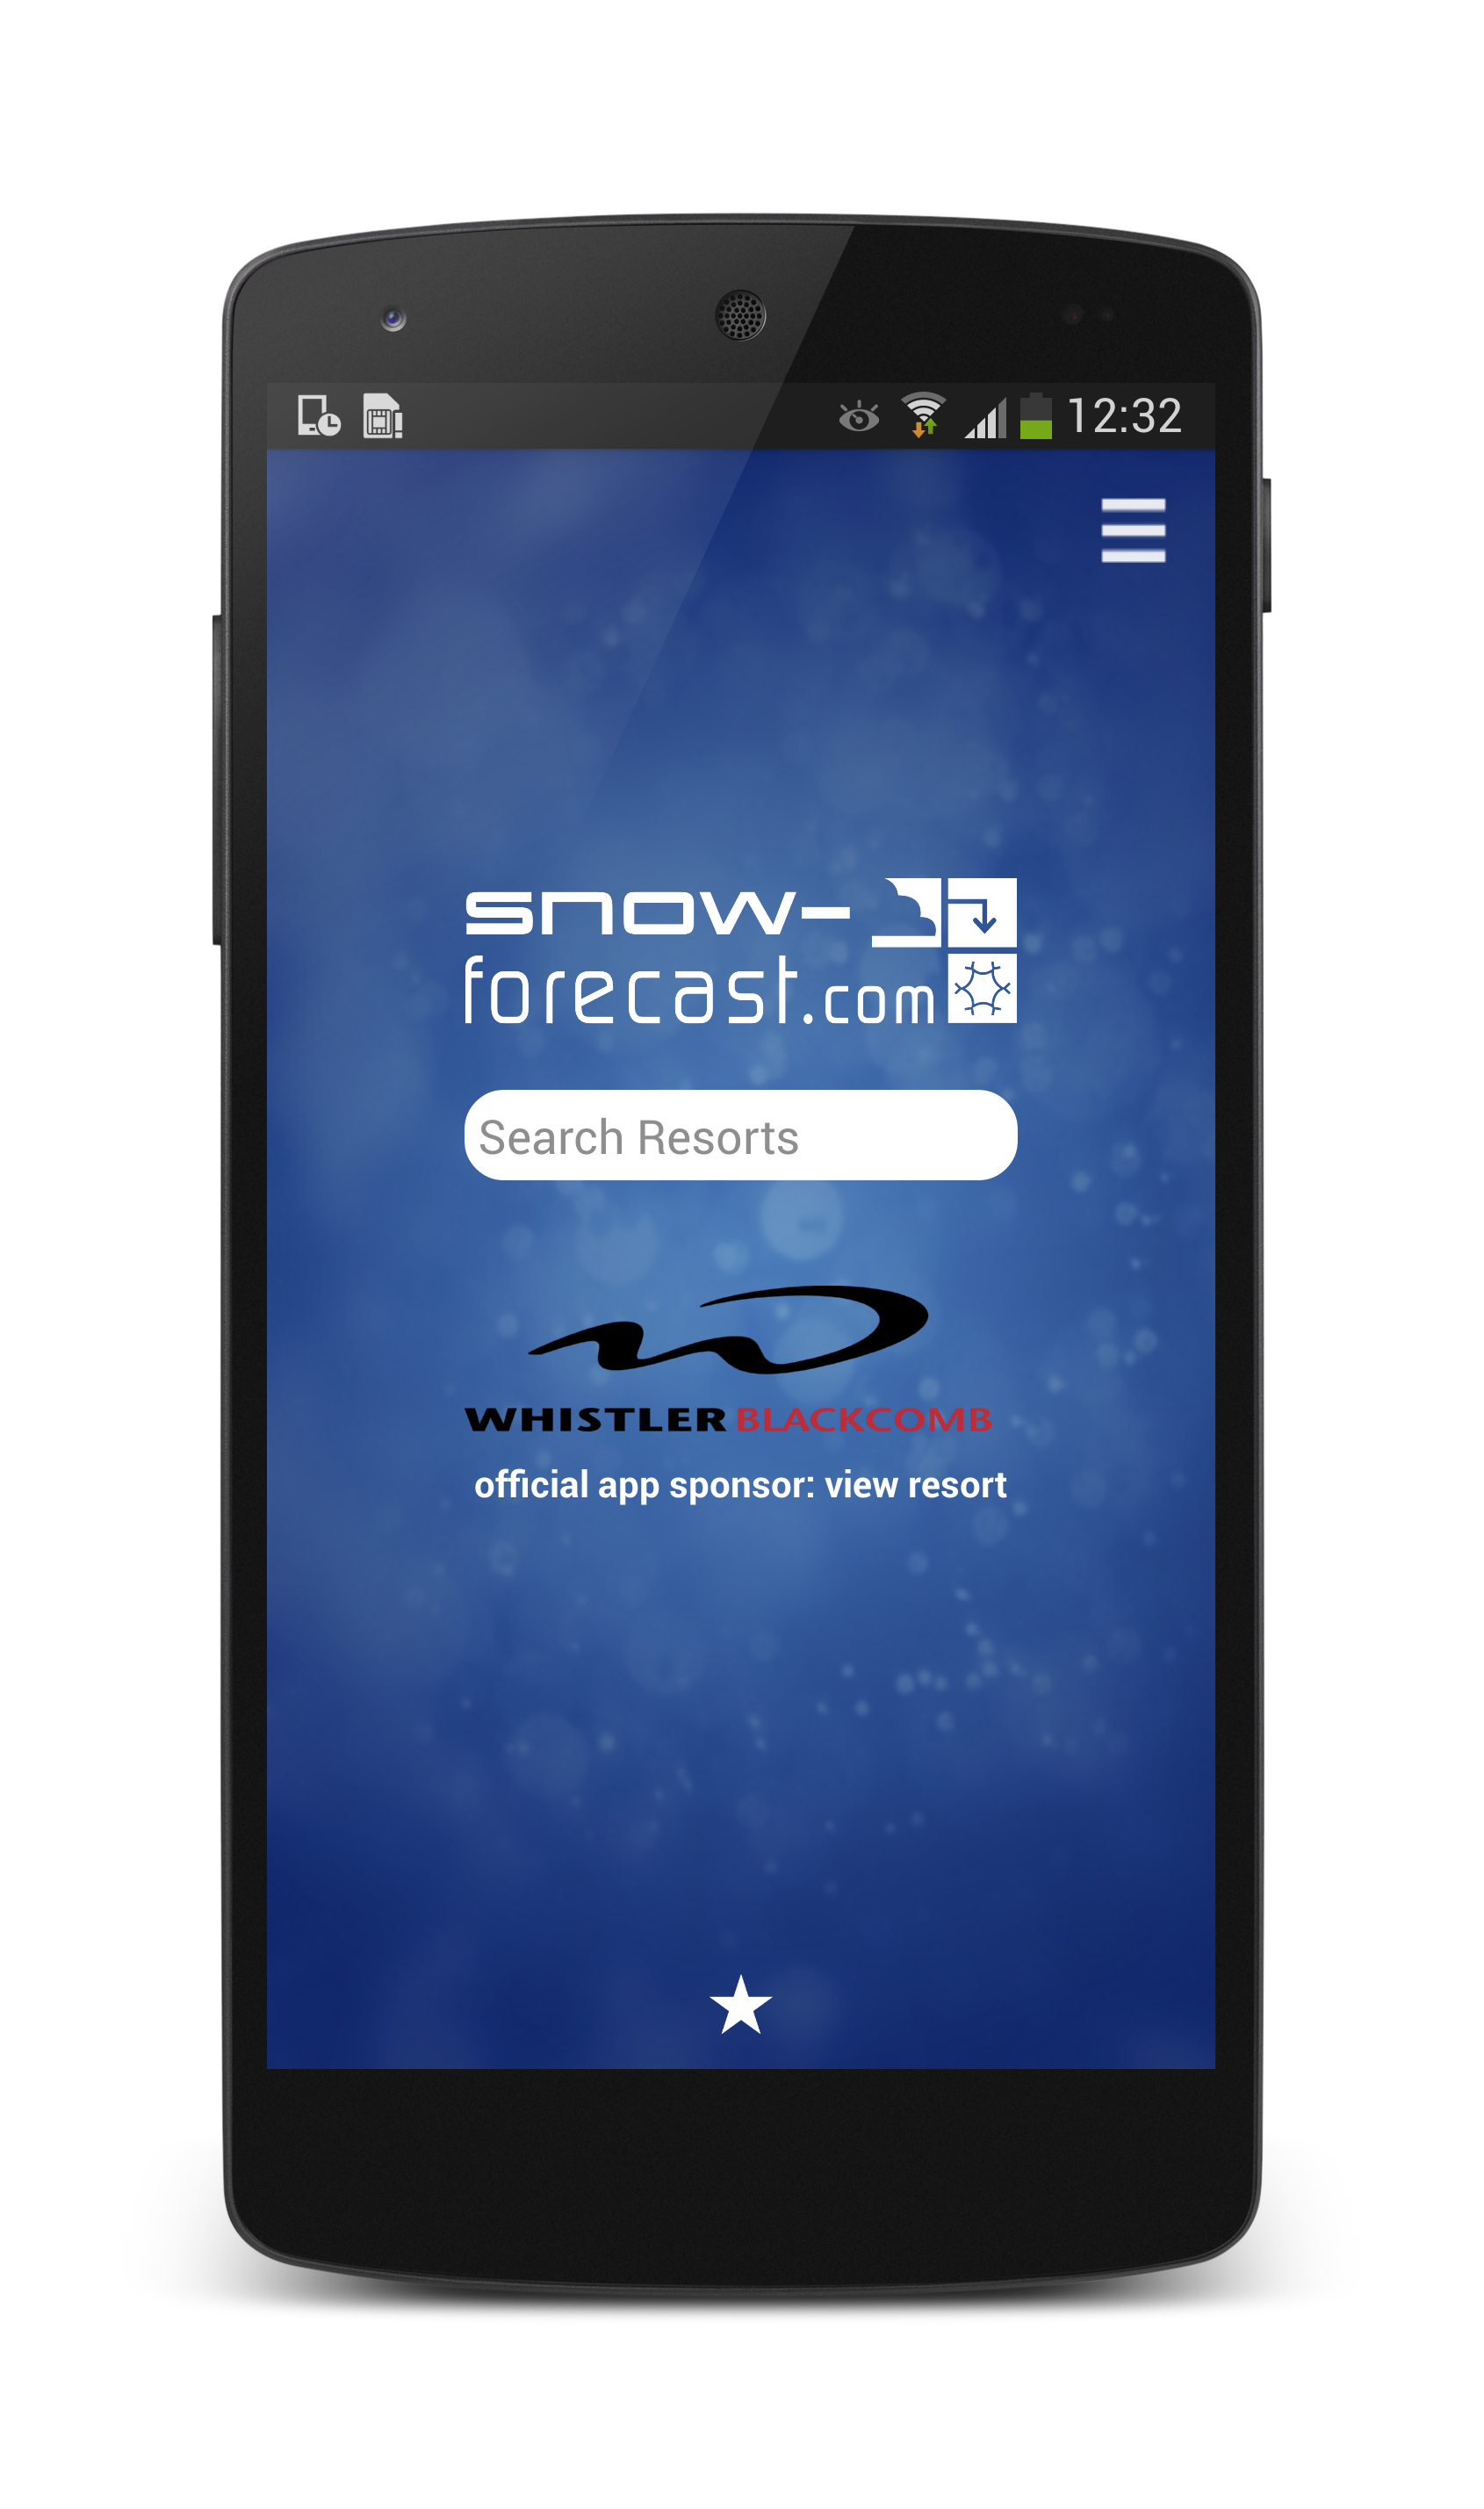 Android application Snow-Forecast.com Mobile App screenshort